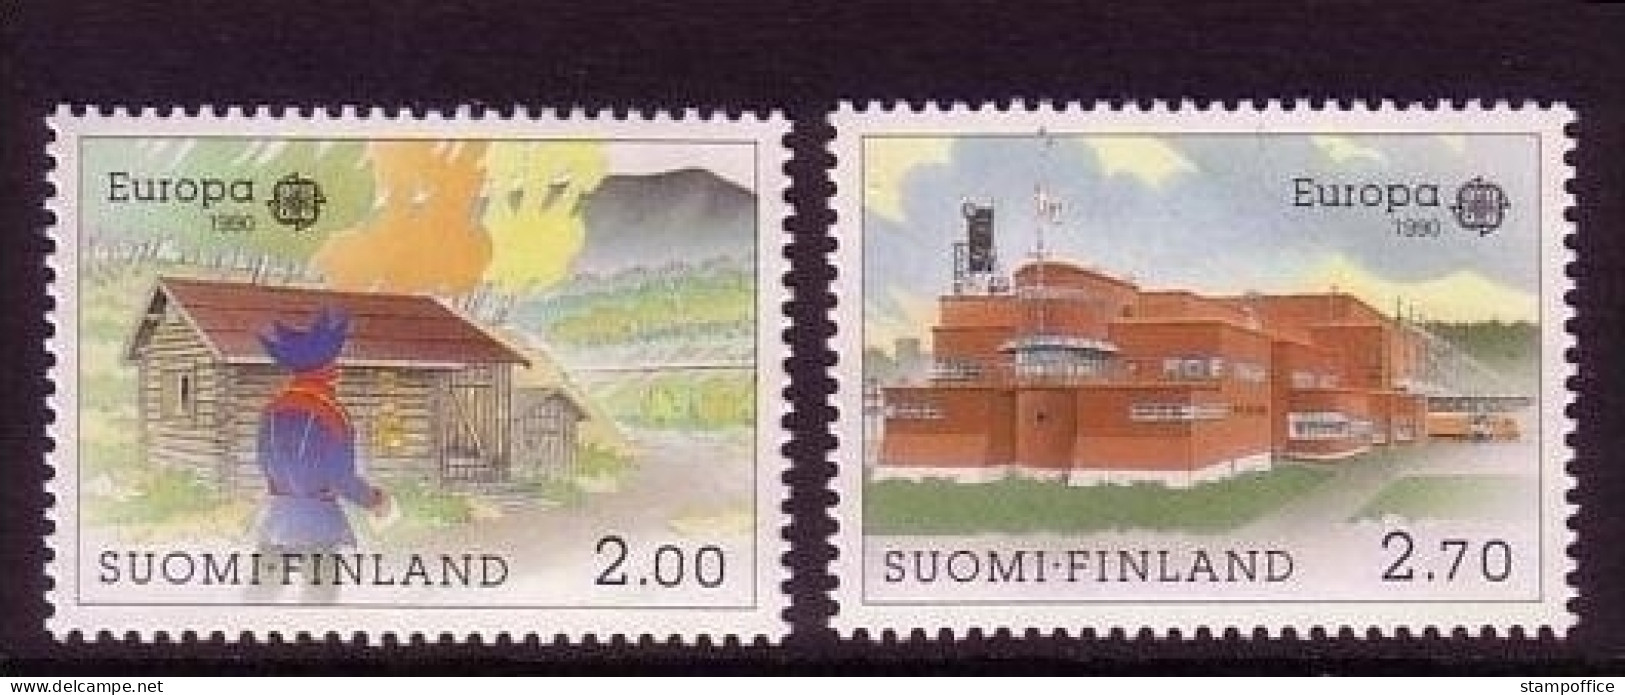 FINNLAND MI-NR. 1108-1109 POSTFRISCH(MINT) EUROPA 1990 - POSTALISCHE EINRICHTUNGEN - 1990